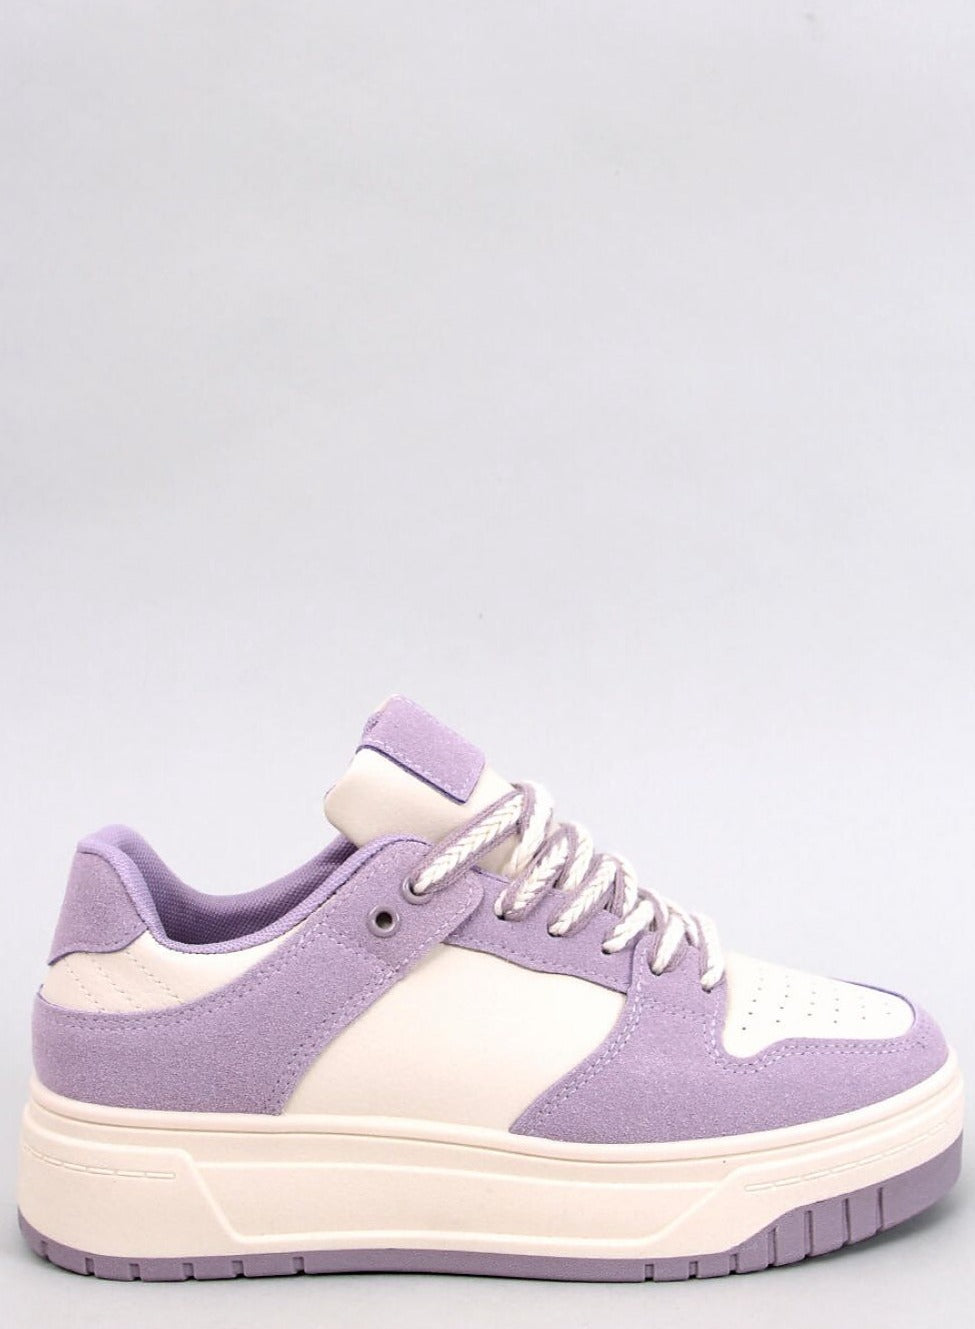 TEEK - Lavender Looker Platform Sneakers SHOES TEEK MH 6  